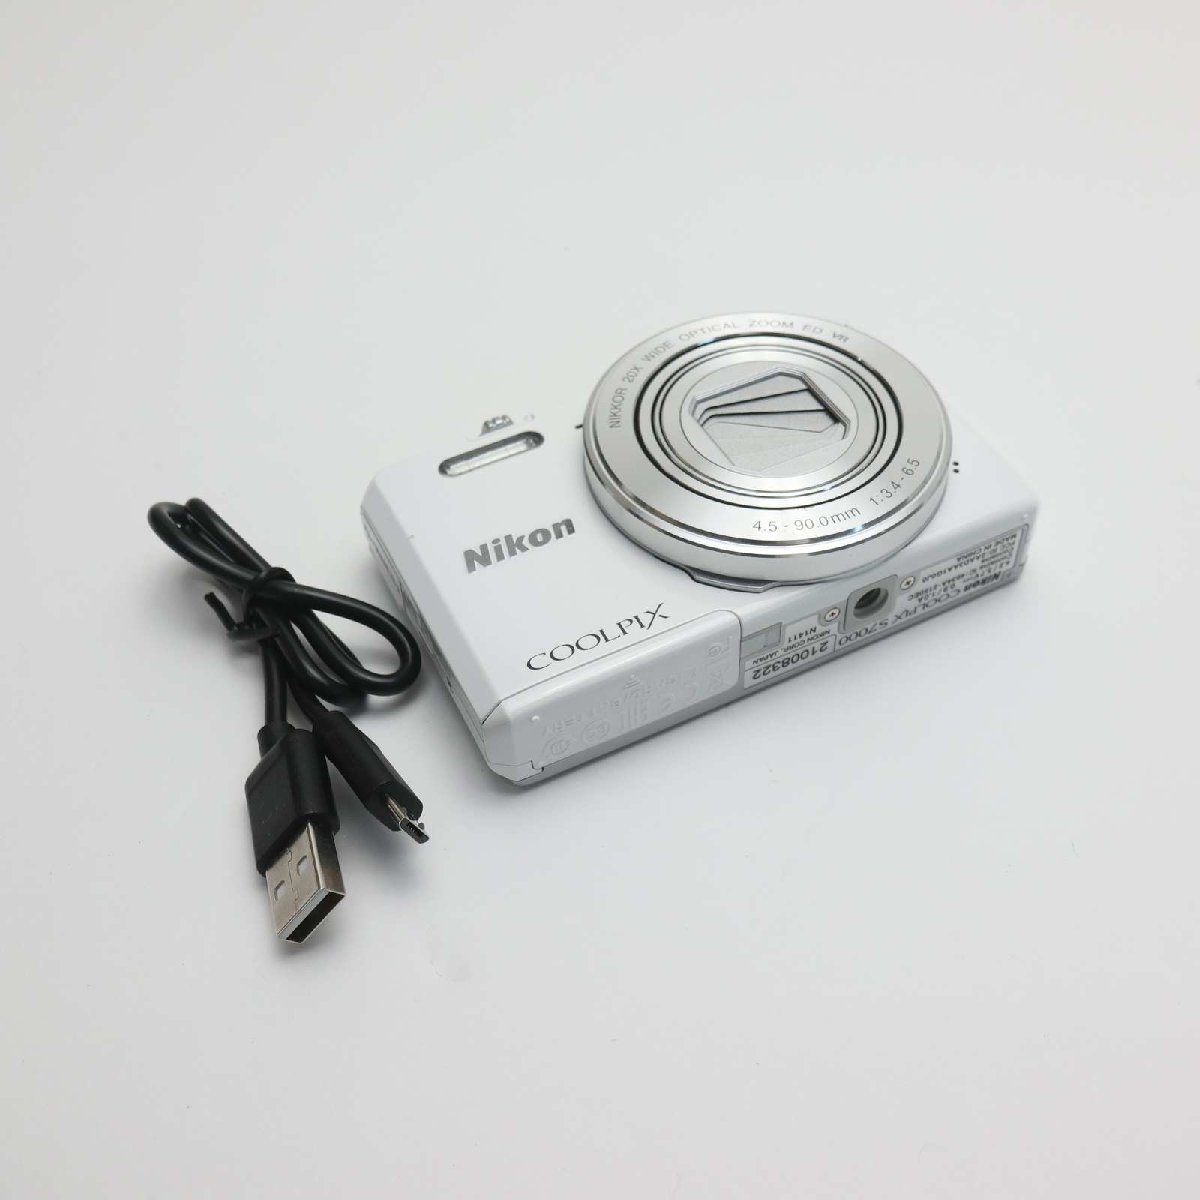 激安な コンデジ 即日発送 ホワイト S7000 COOLPIX 超美品 Nikon 土日